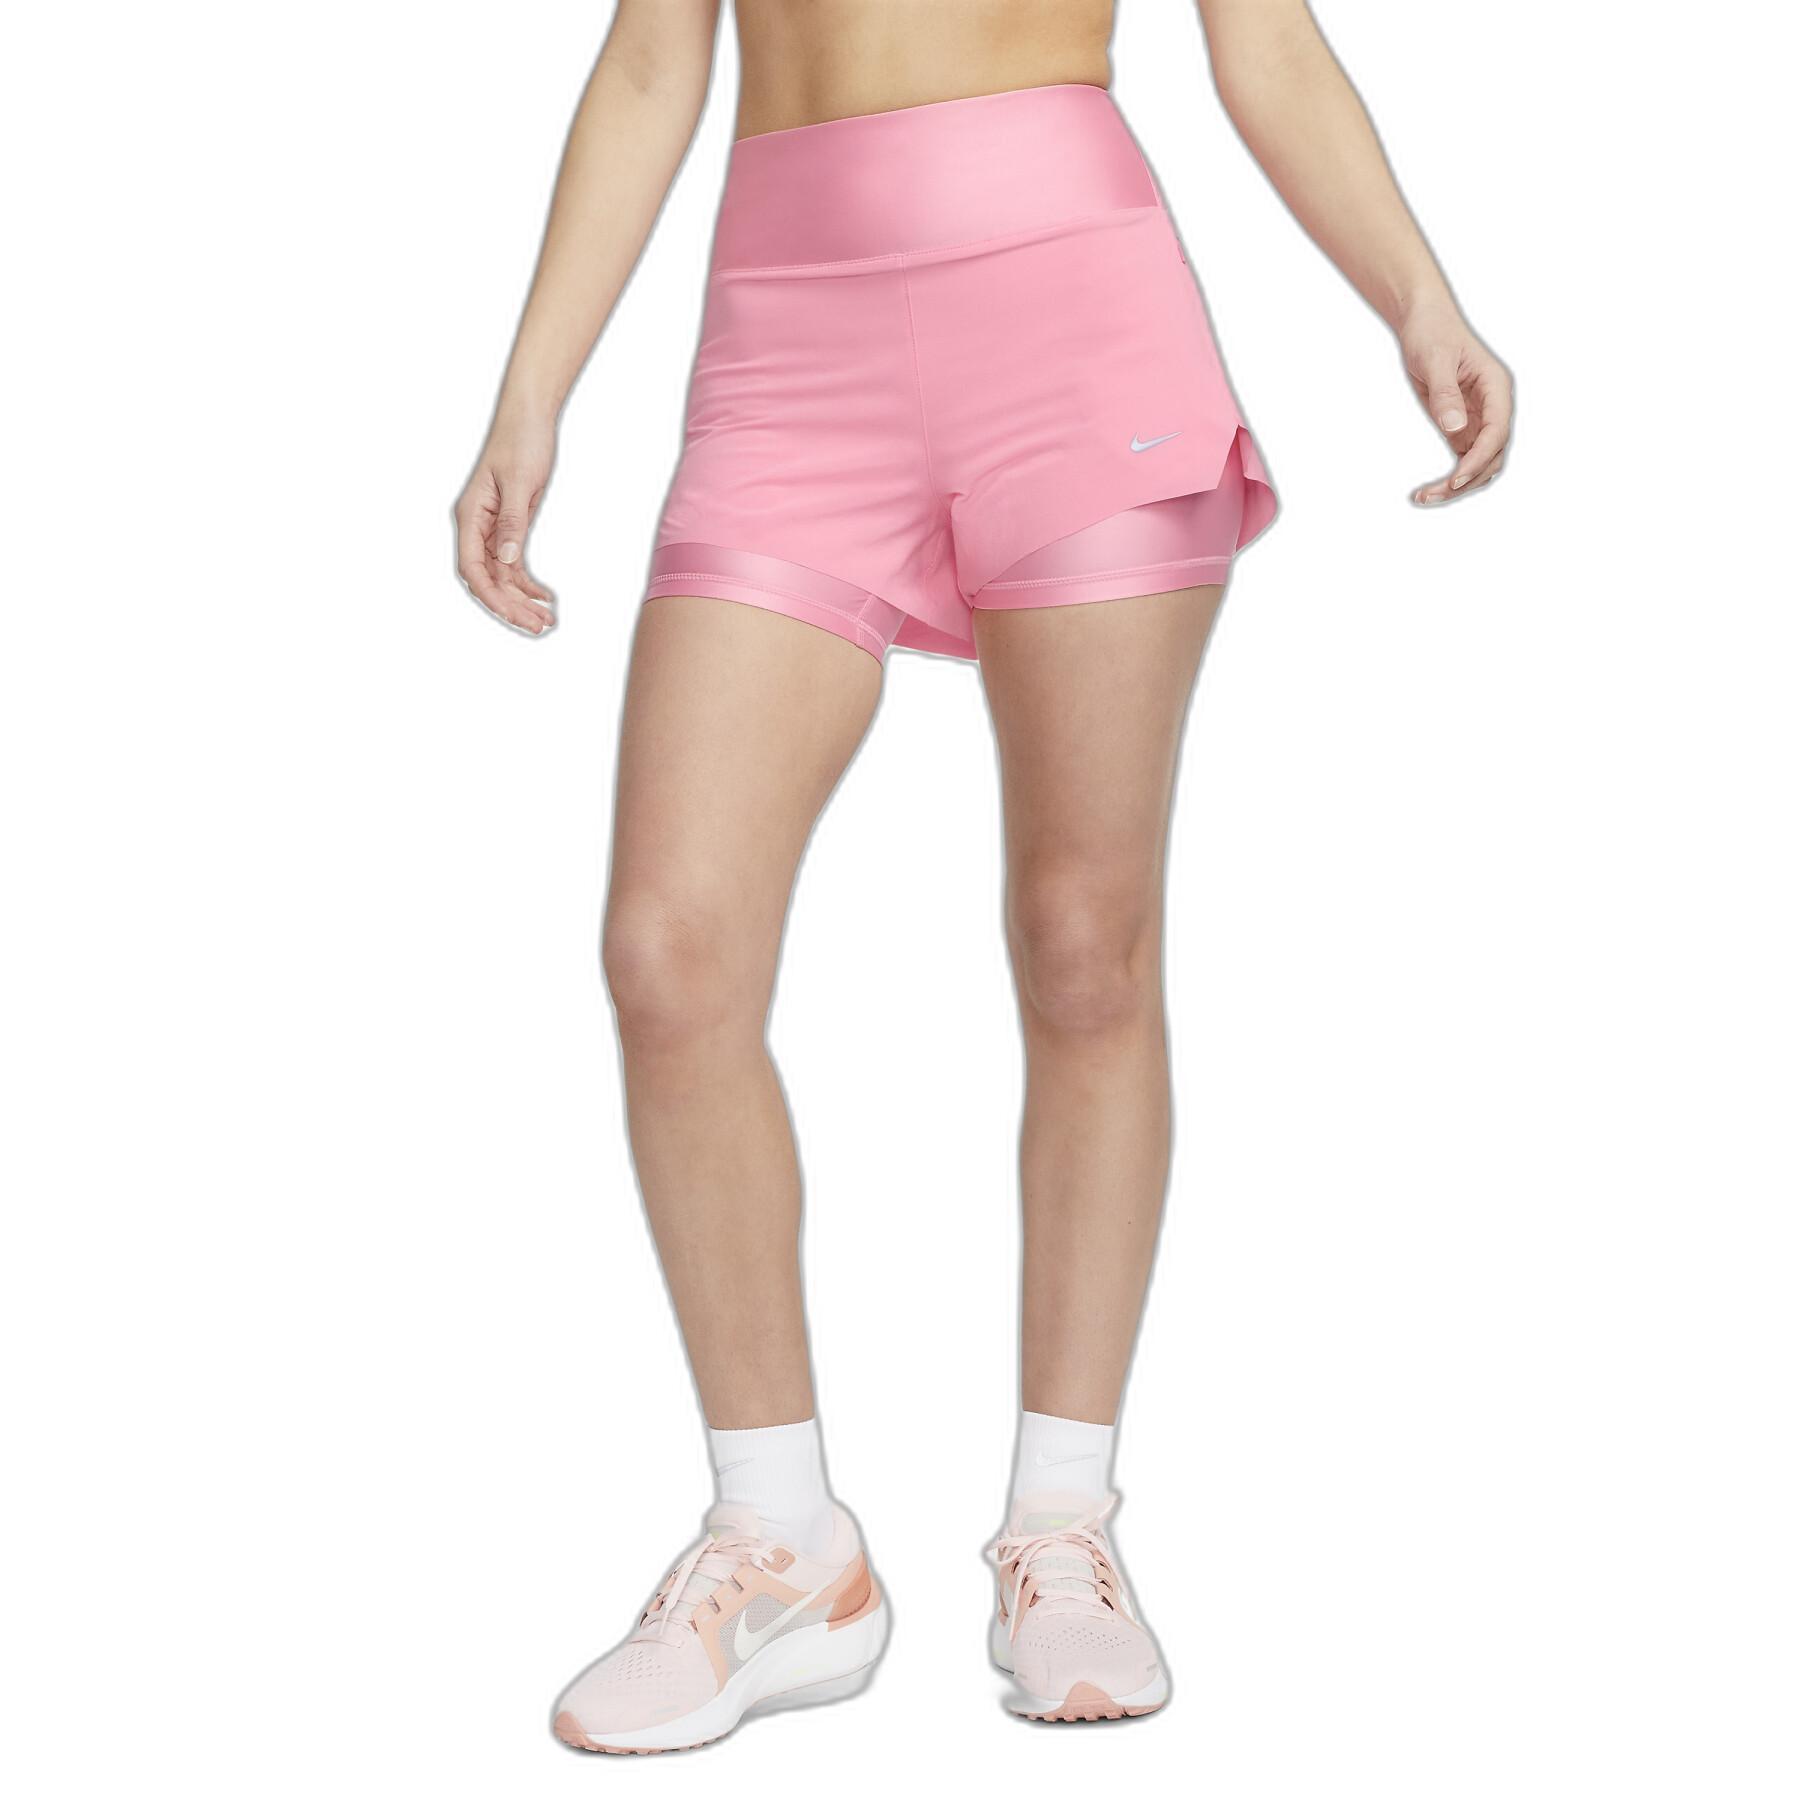 Women's 2-in-1 shorts Nike Swift Dri-FIT MR 3 "